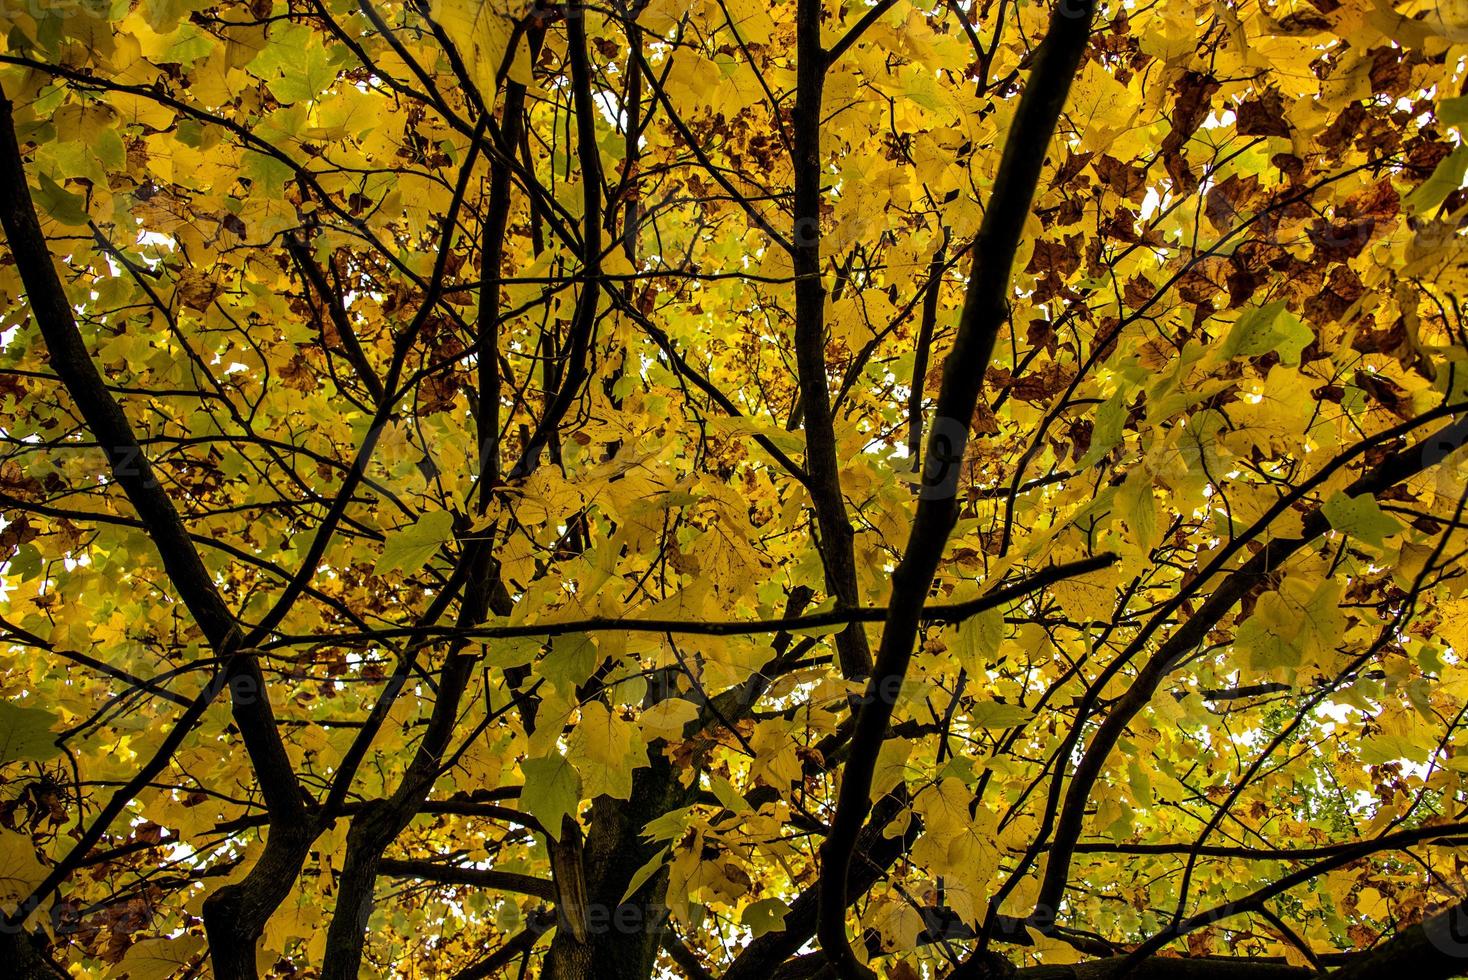 techo de hojas amarillas foto